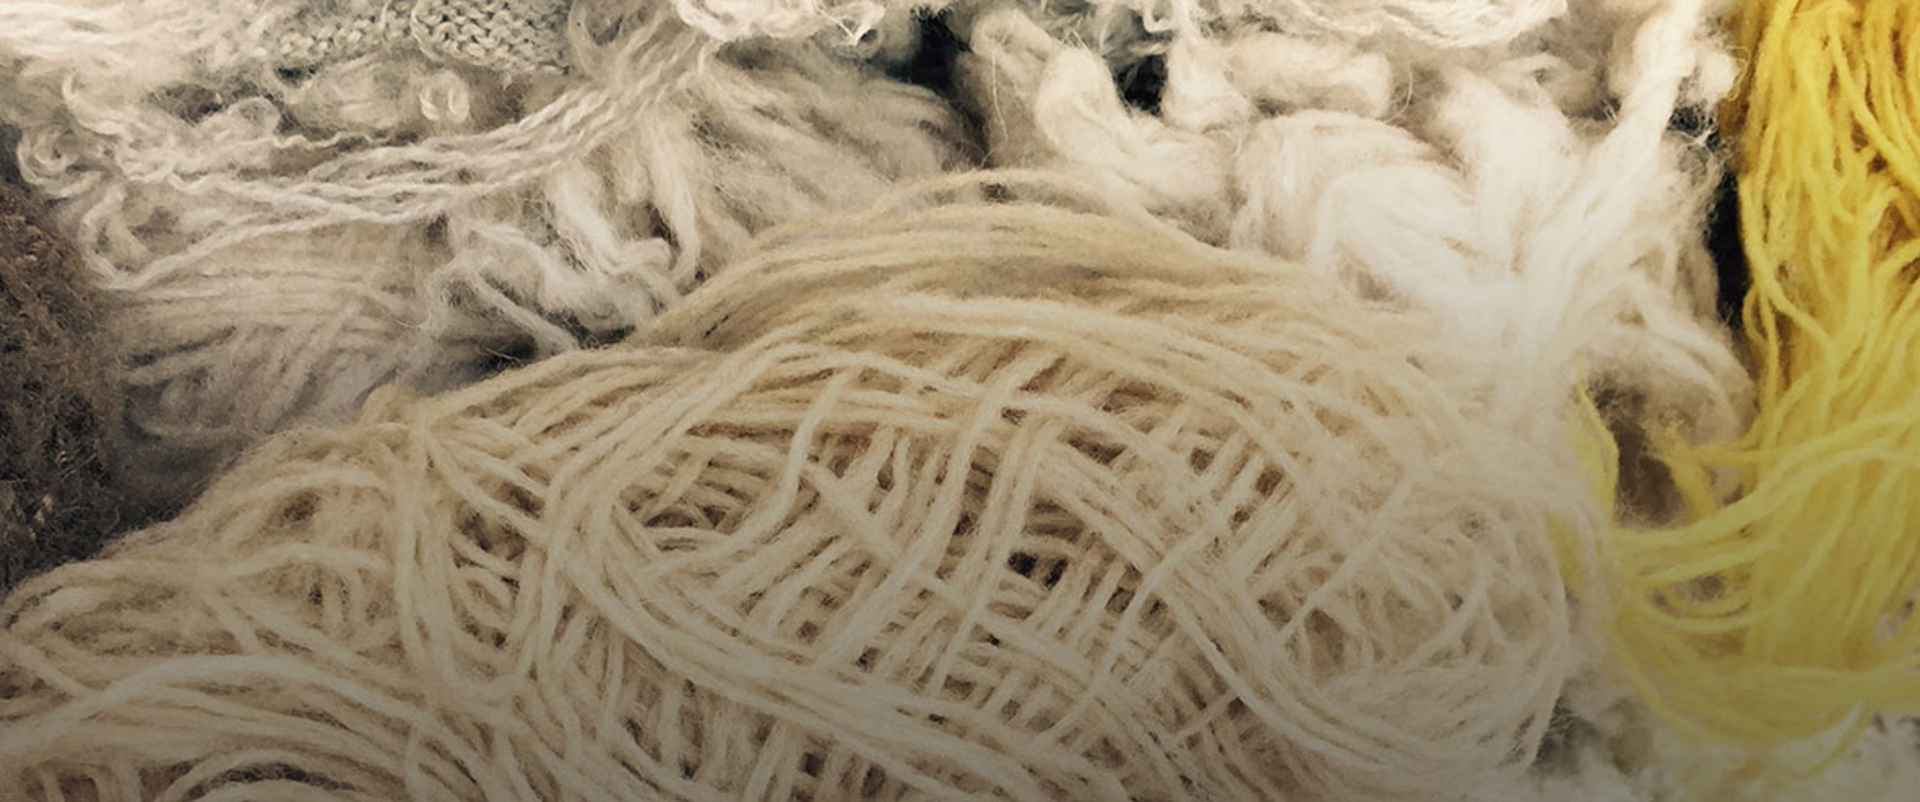 Closeup of yarn